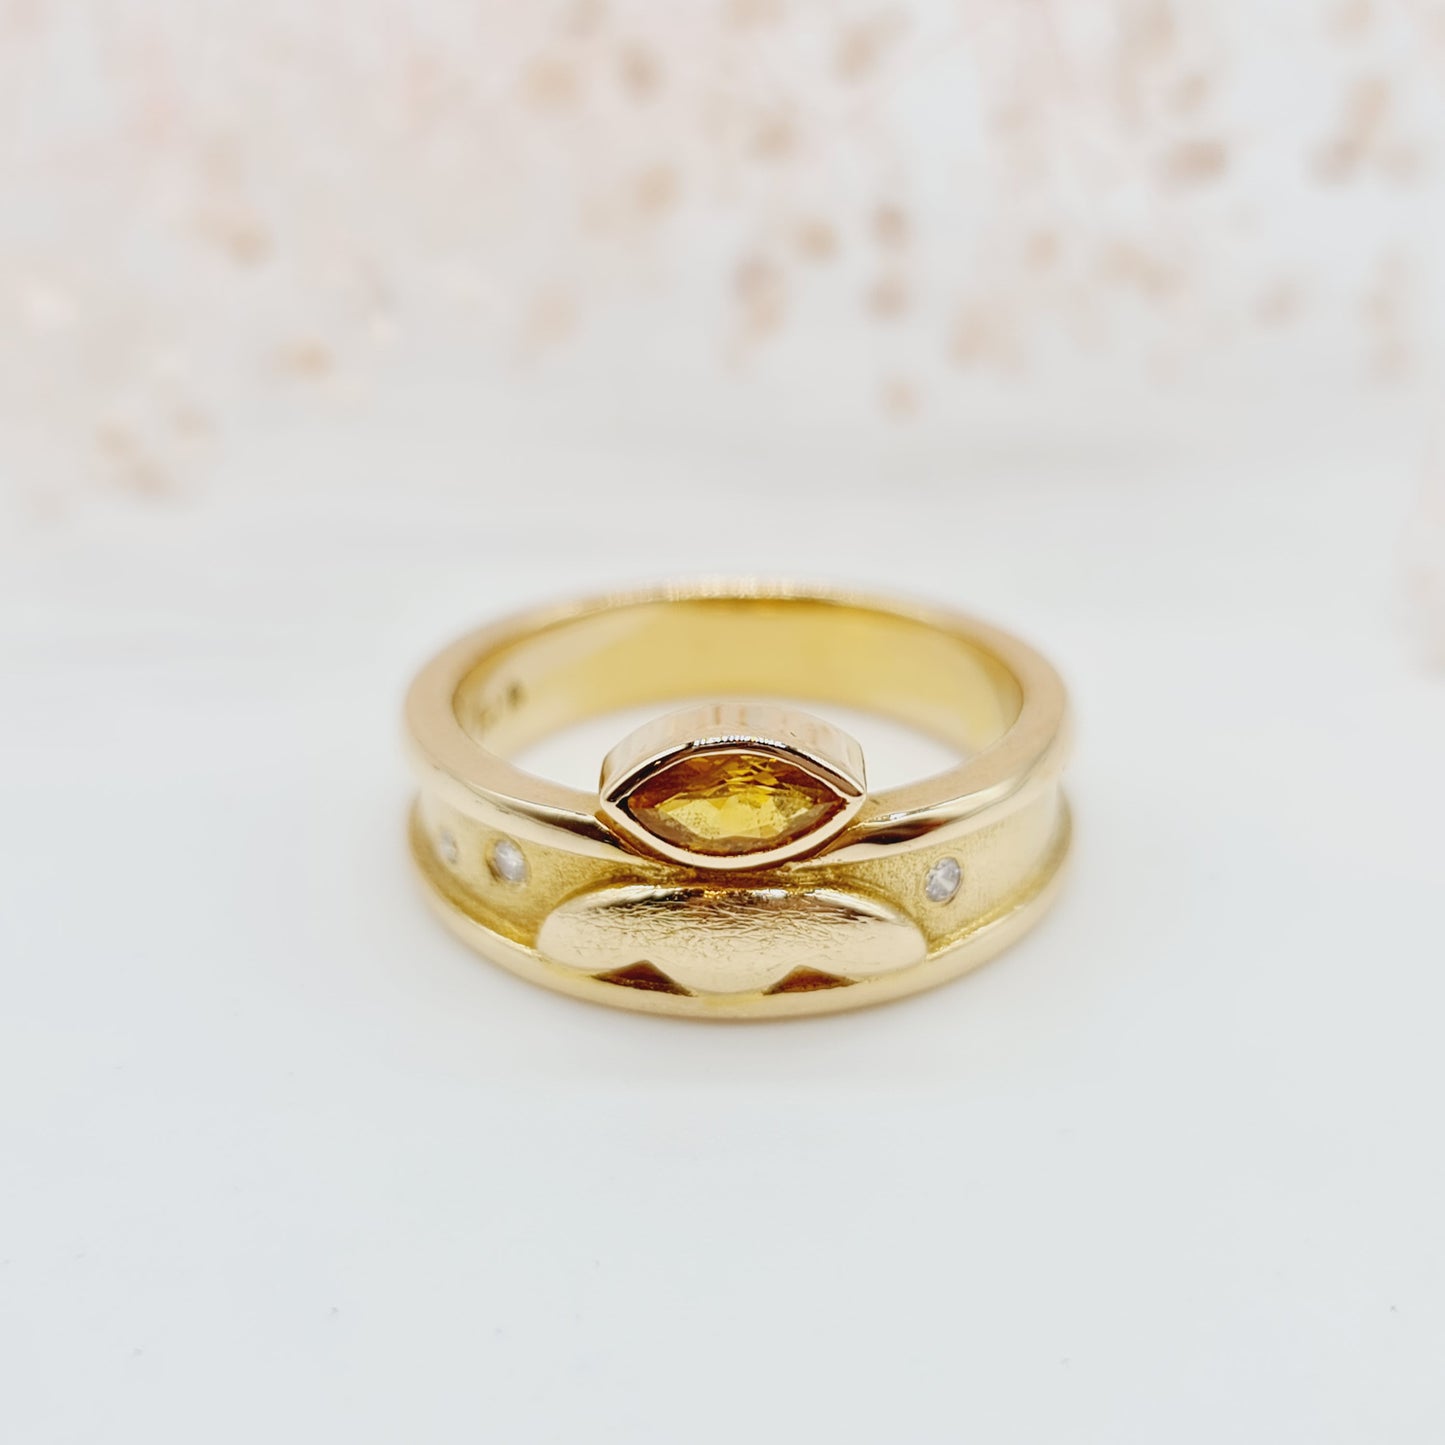 Einzigartiger handgeschmiedeter Vintage-Ring mit Zitrin im Navettschliff und Brillanten, aus 750 18 kt Gelbgold